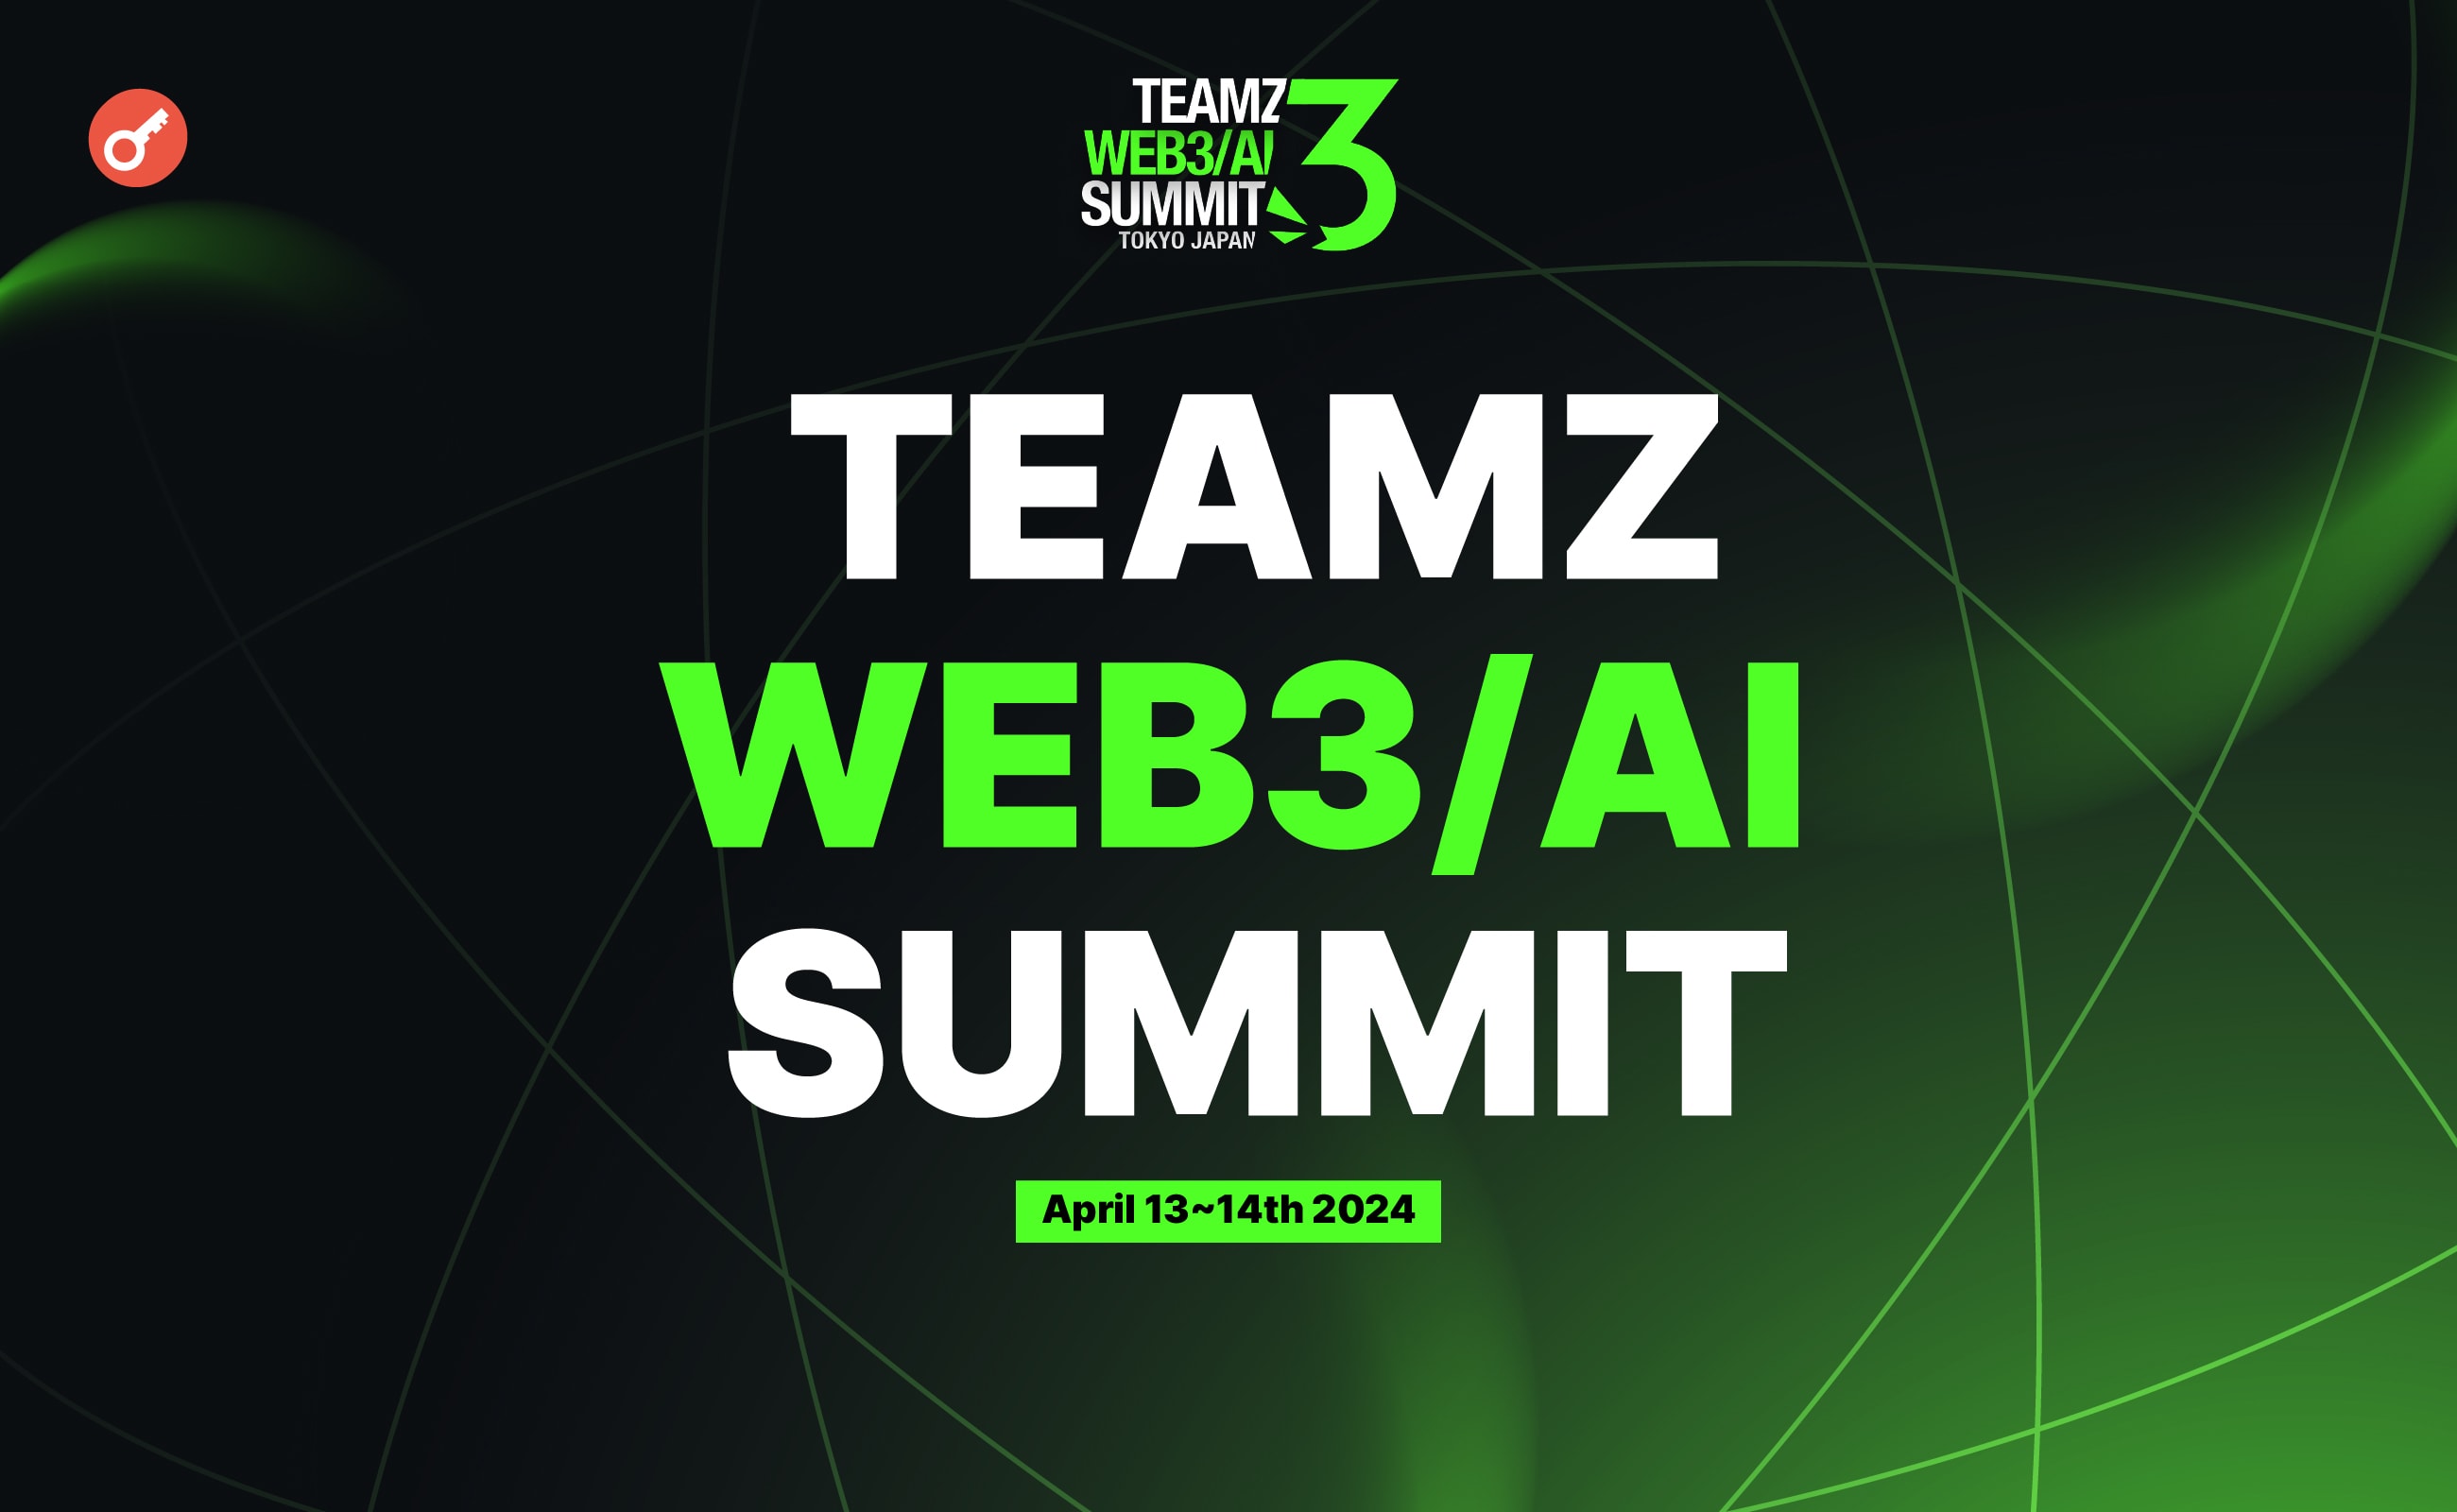 В апреле в Токио пройдет TEAMZ WEB3/AI SUMMIT 2024. Заглавный коллаж новости.